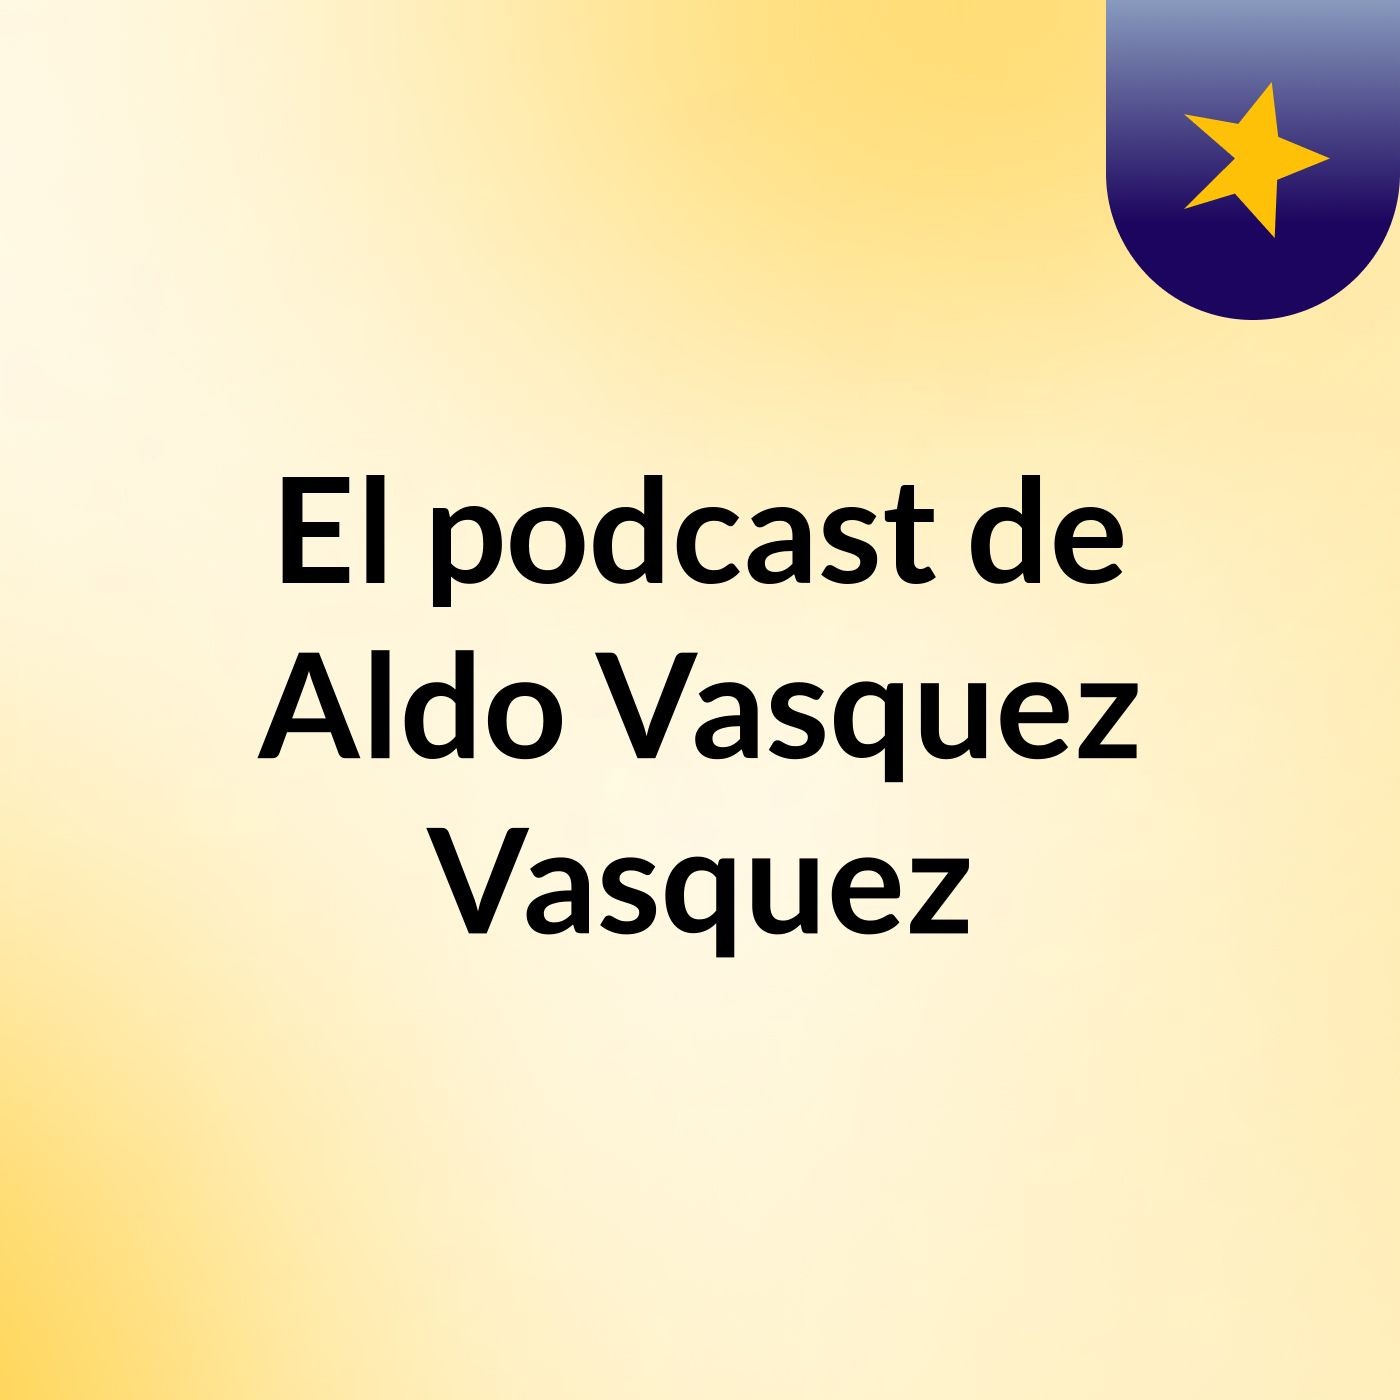 Episodio 3 - El podcast de Aldo Vasquez Vasquez